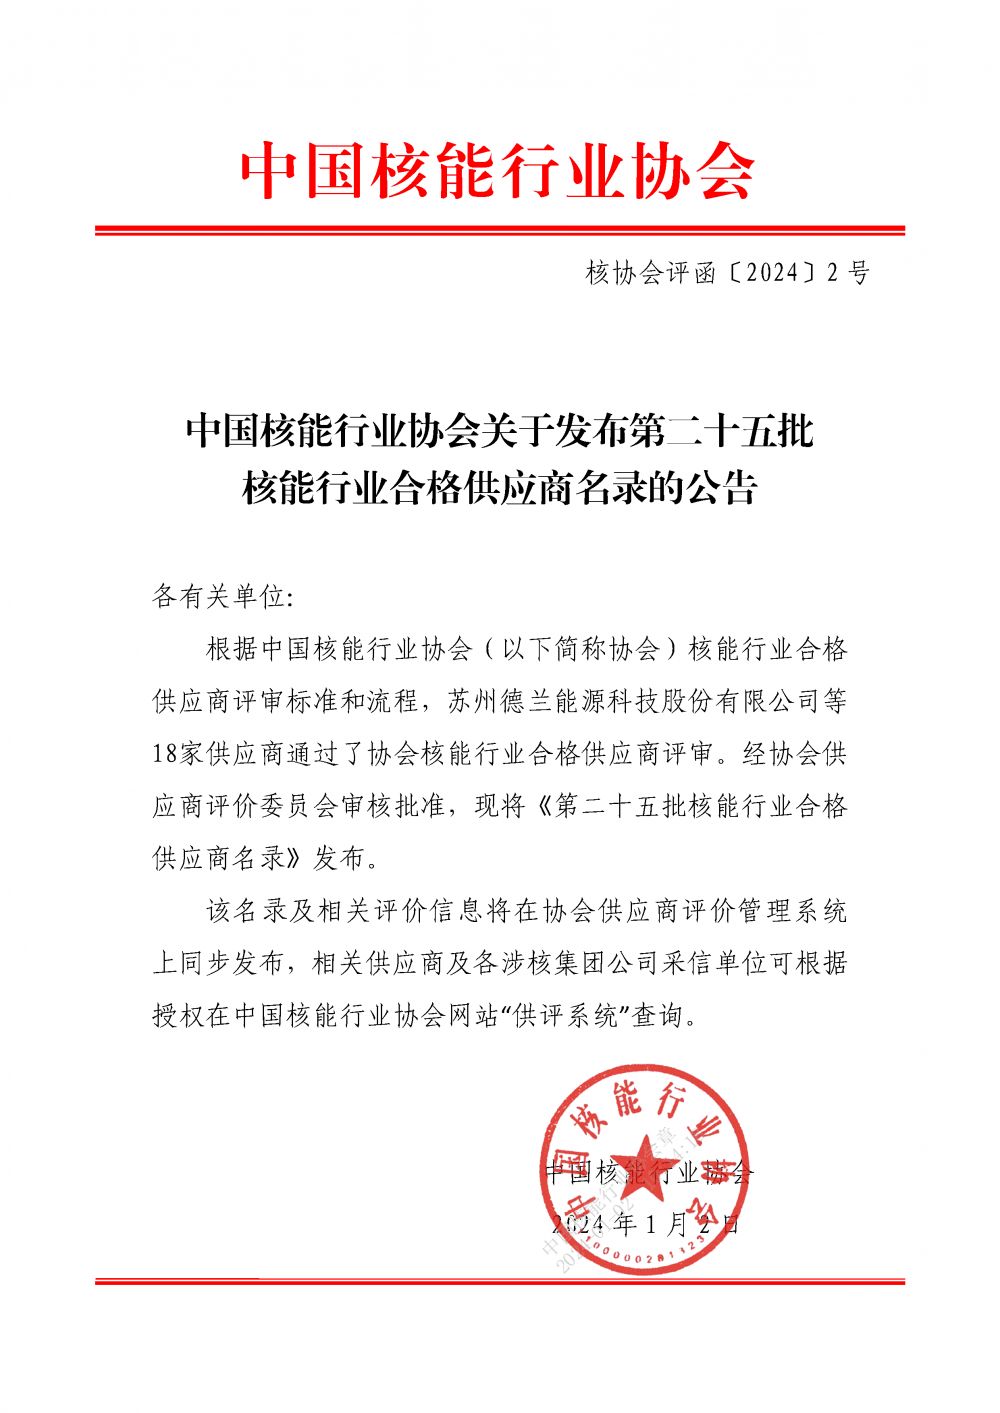 中国核能行业协会关于发布第二十五批核能行业合格供应商名录的公告_页面_1.png